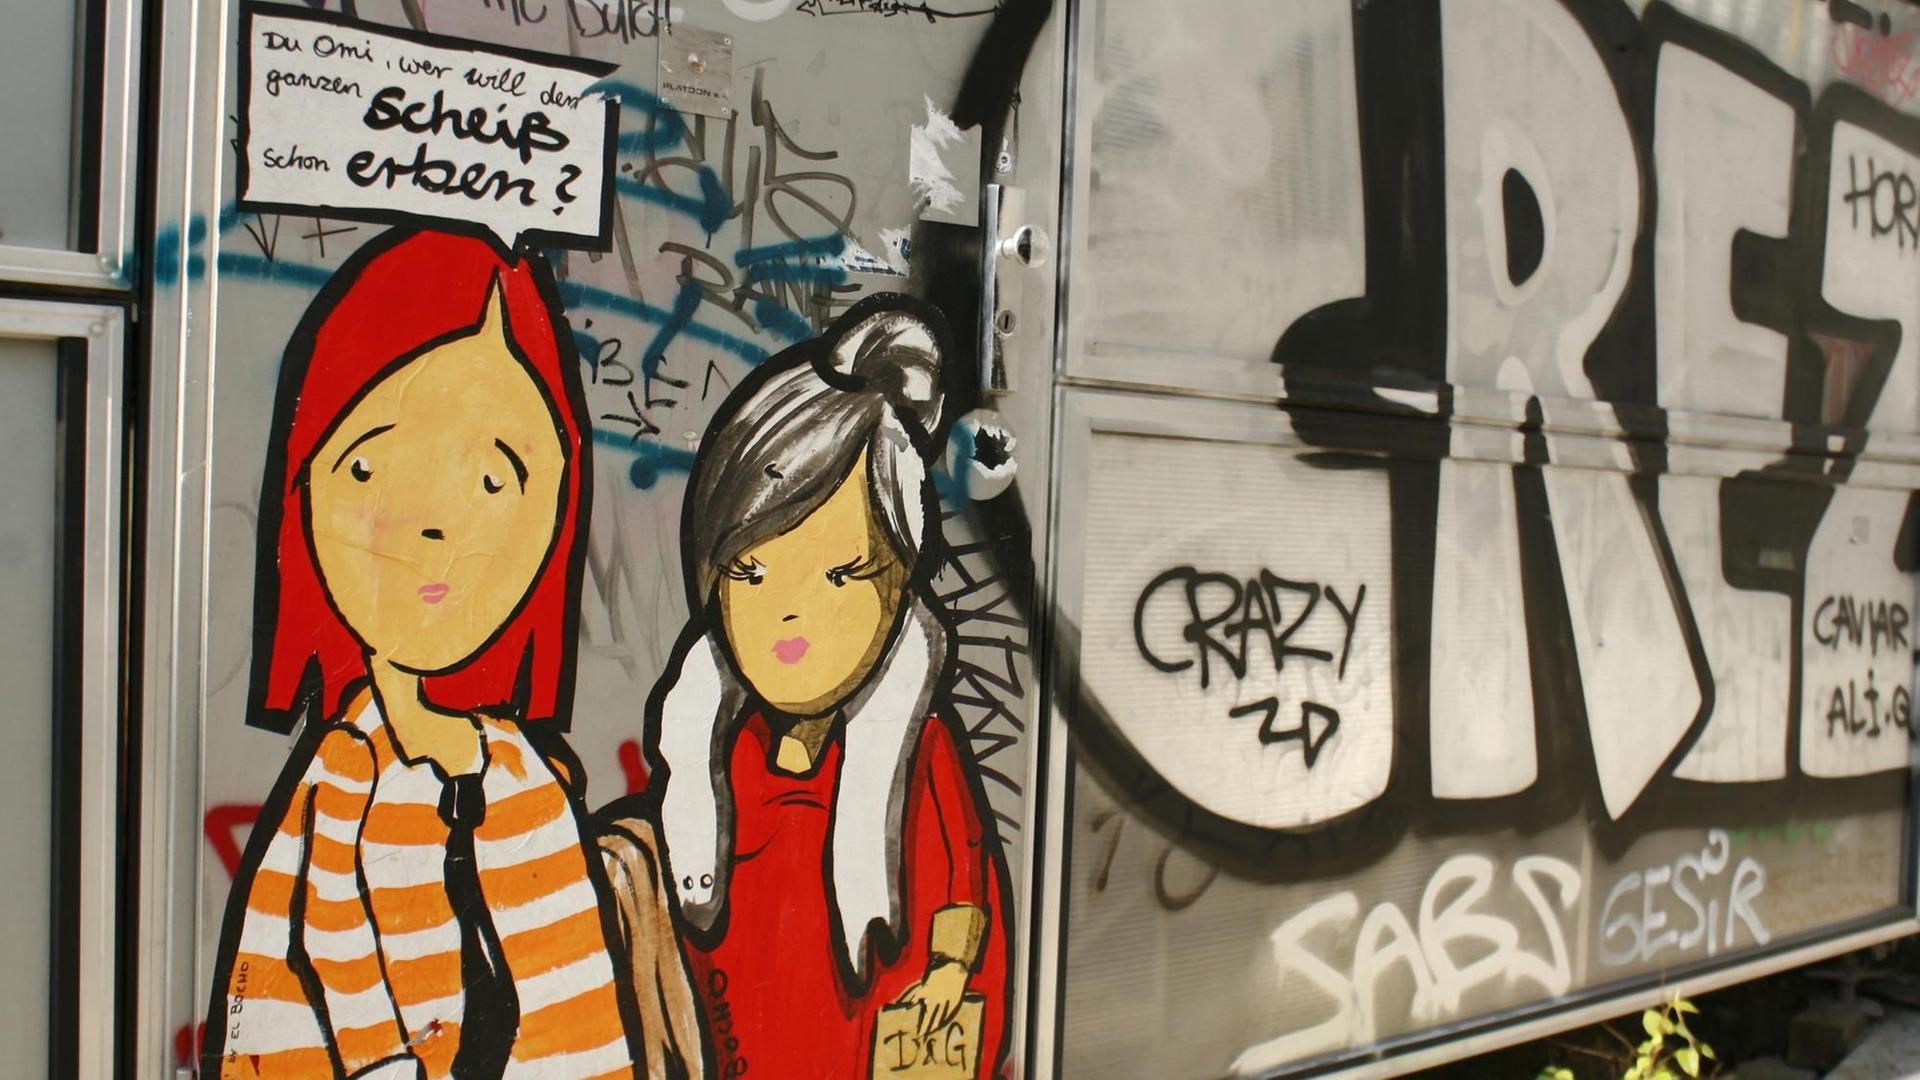 Ein Motiv des Street-Art-Künstlers "El Bocho" - Die Figut "Poor Hannah" im Streifenpulli und ihre Oma im Luxusoutfit mit teuren Markenklamotten und die Sprechblase mit den Worten; "Du Omi, wer soll den ganzen Scheiß schon erben?", aufgenommen in Berlin im Bezirk Mitte im April 2011. Berlin ist ein Zentrum für Street Art, das Künstler aus dem In- und Ausland anzieht. El Bocho ist mit seinen Werken in Berlin im Satdteil Mitte sehr präsent. Seine Werke erinnern an Comics mit Unterschriften oder Sprechblasen. Zwei seiner Hauptfiguren sind "Little Lucy" und ihre Katze, die von dem Mädchen allerhand erdulden muss. Aber auch großflächige Porträts und immer wieder Überwachunskameras gehören zu seinem originellen Repertoire. ACHTUNG REDAKTIONEN: Nur zur redaktionellen Verwendung bei Nennung des Namens der Künstlers "El Bocho". Verwendung zu Werbezwecken nur nach Rücksprache mit dem Künstler. Foto: Wolfram Steinberg